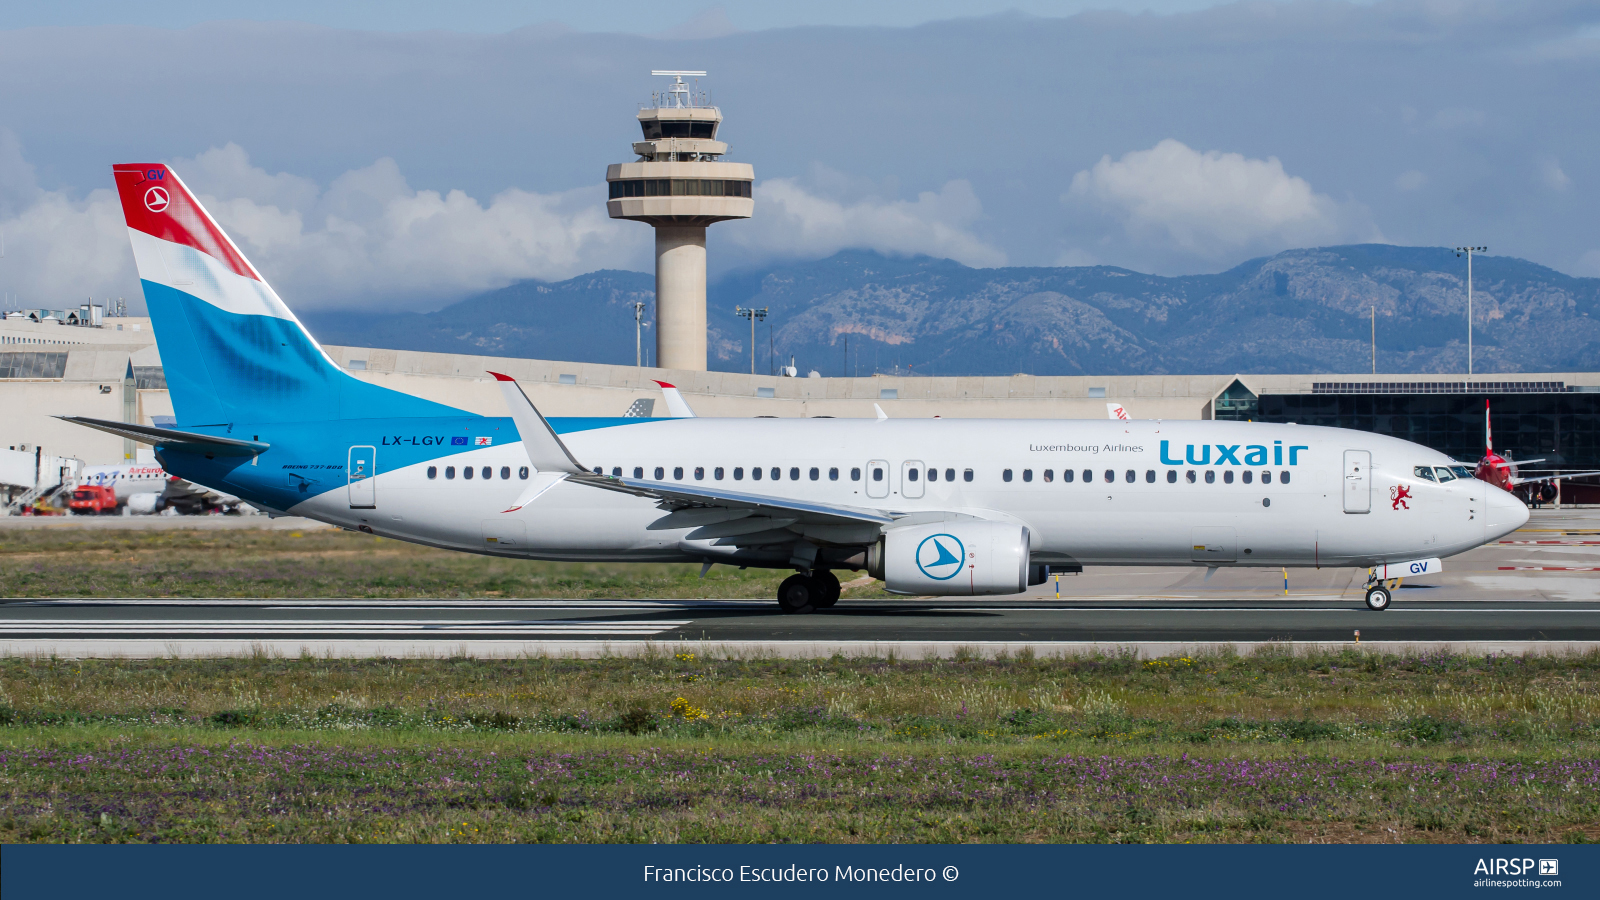 Luxair  Boeing 737-800  LX-LGV